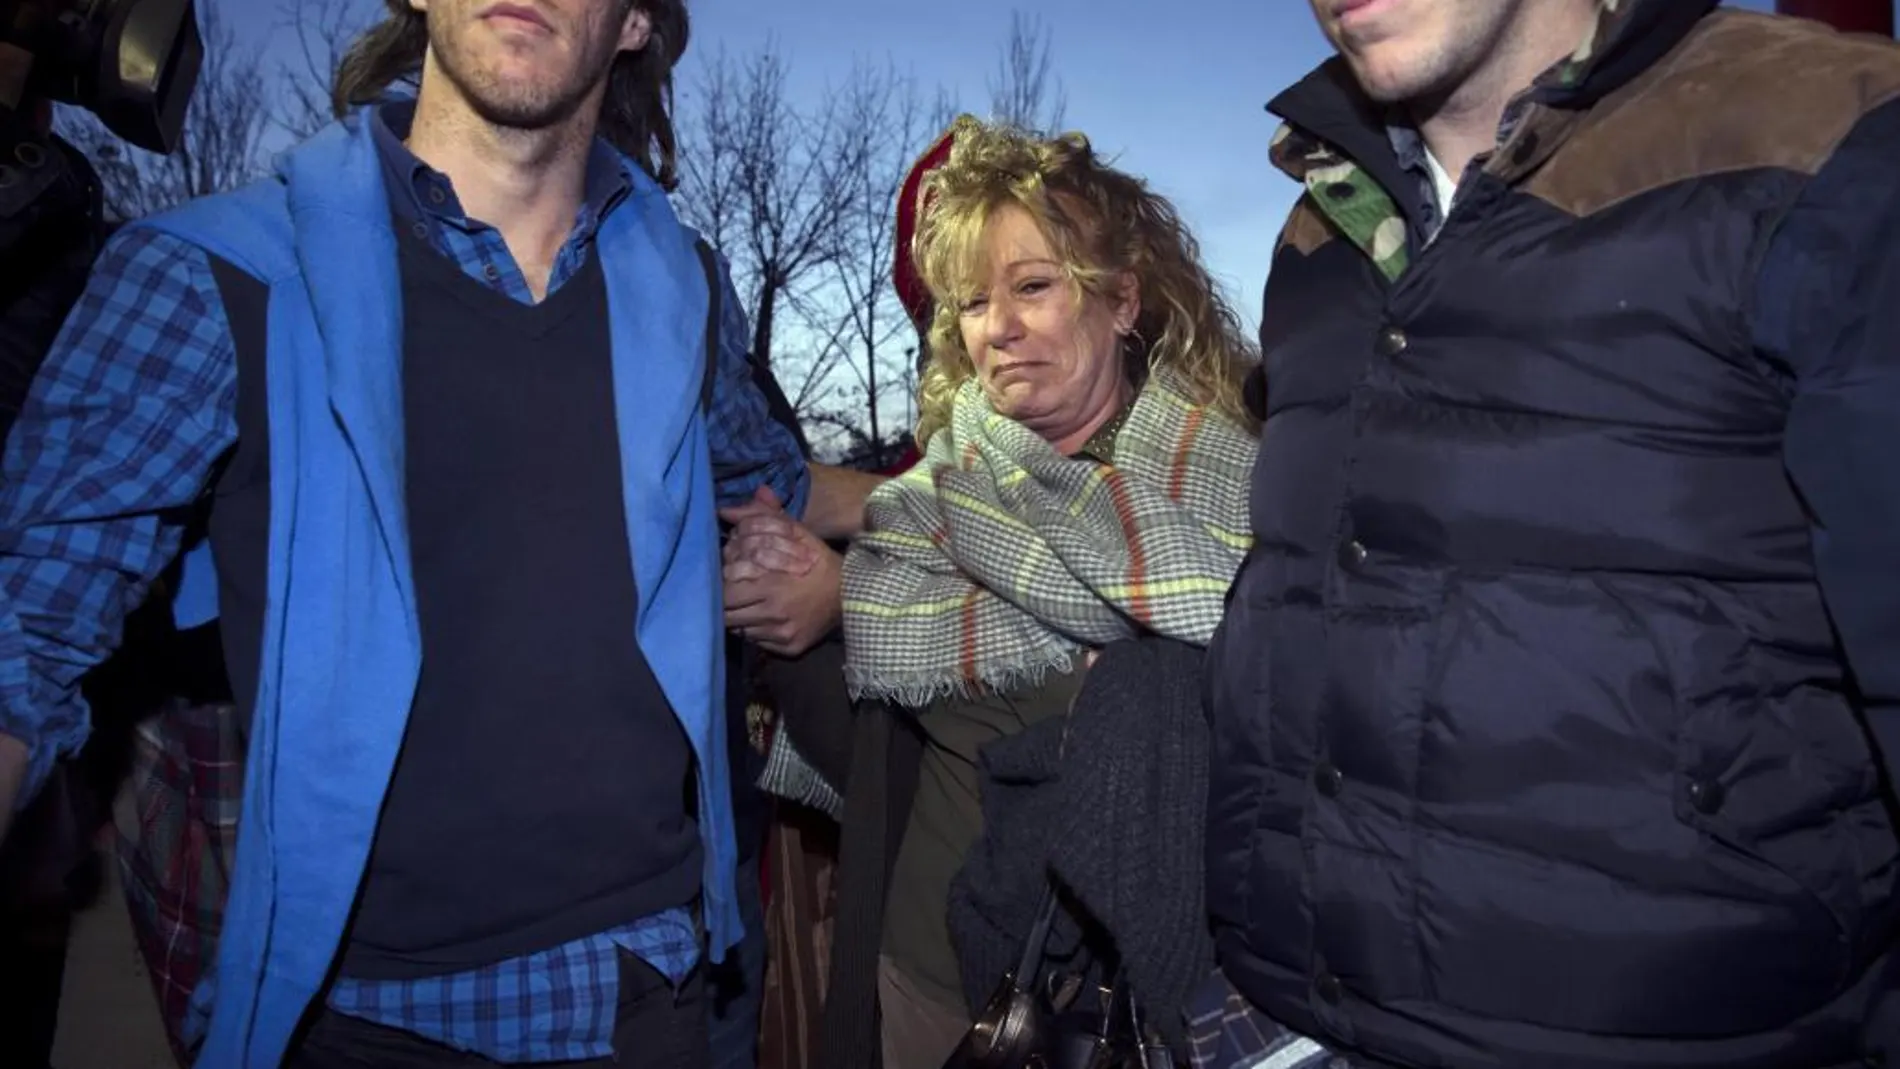 La exalcaldesa de Marbella María Soledad Yagüe acompañada por familiares a su entrada a la cárcel de Alhaurín de la Torre.